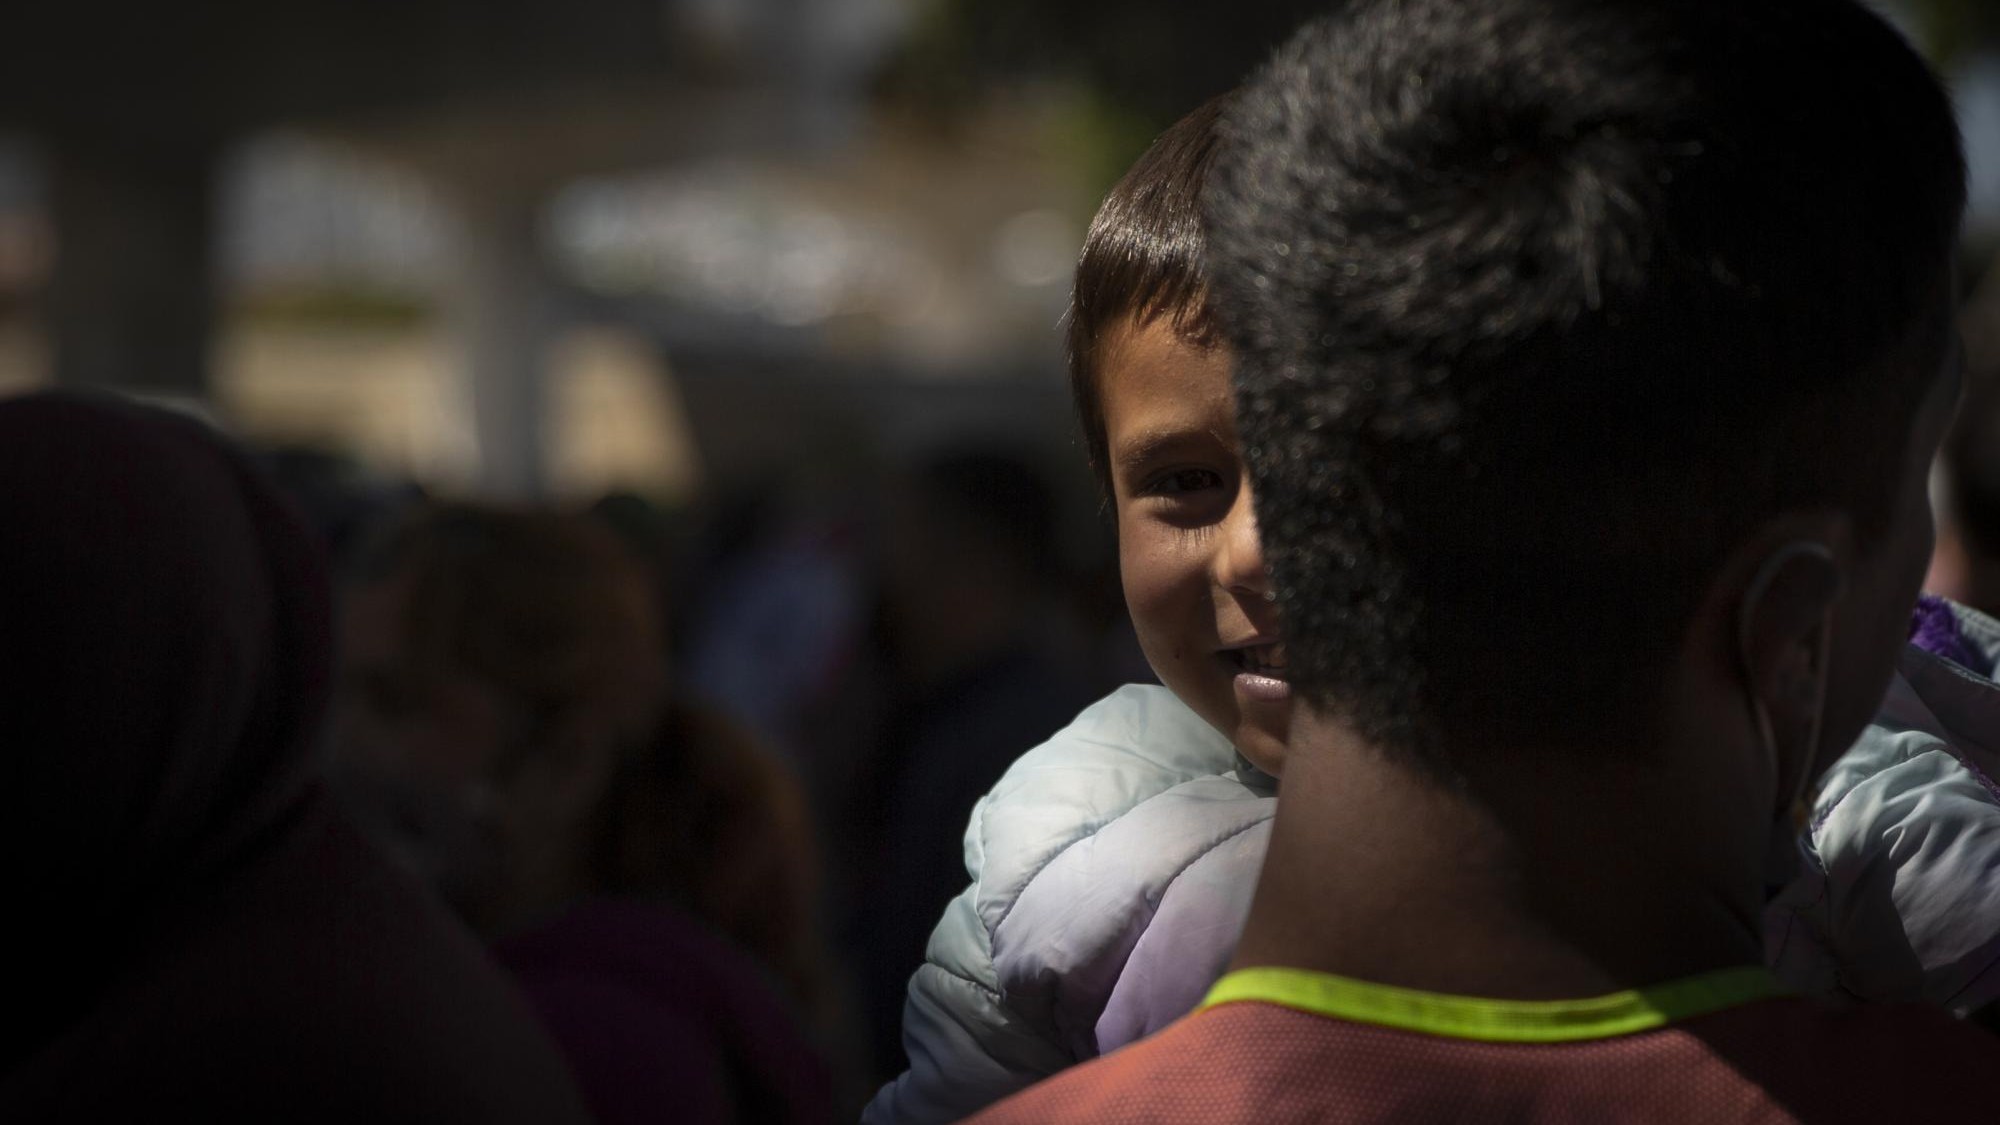 USA - Immer noch rund 1.000 Migranten-Kinder von ihren Eltern getrennt